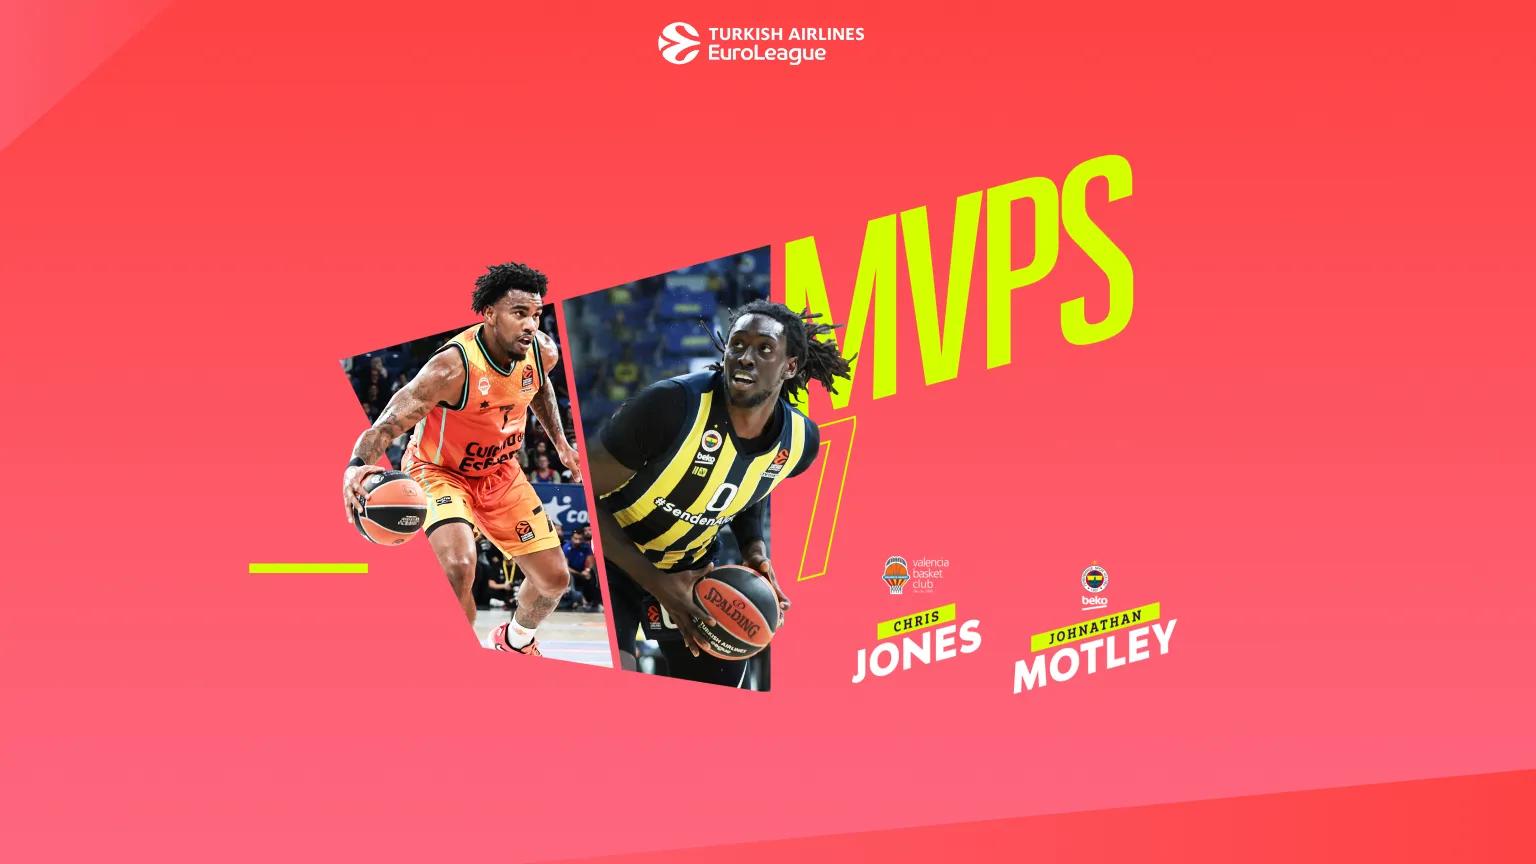 Chris Jones et Jonathan Motley élus co-MVP de la 7e journée d’EuroLeague